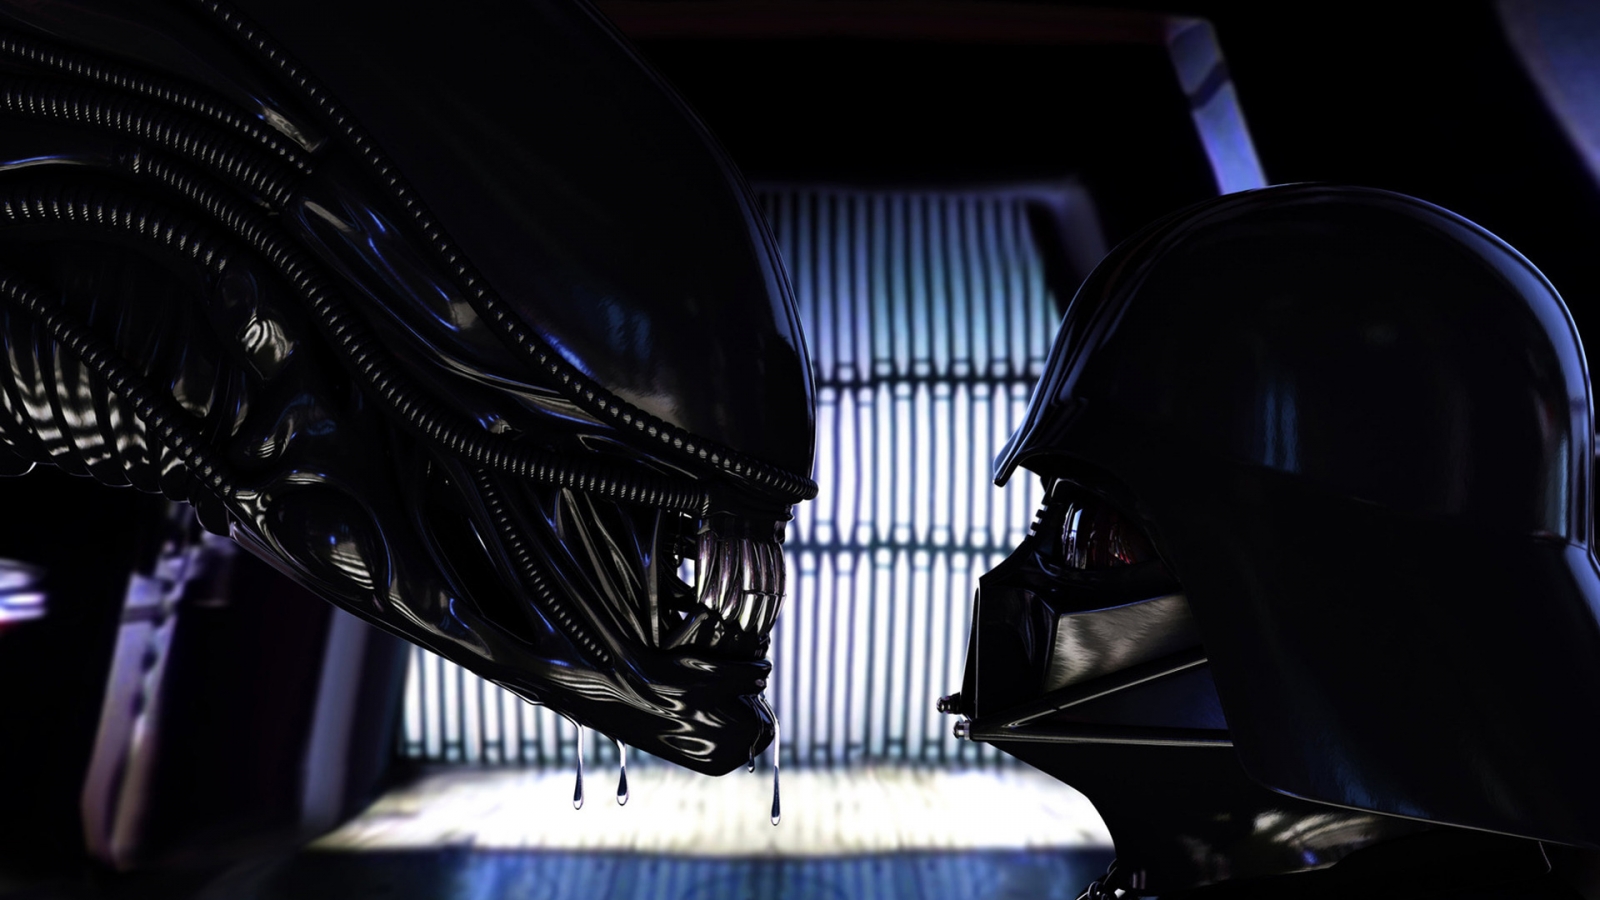 Alien vs Darth Vader for 1600 x 900 HDTV resolution